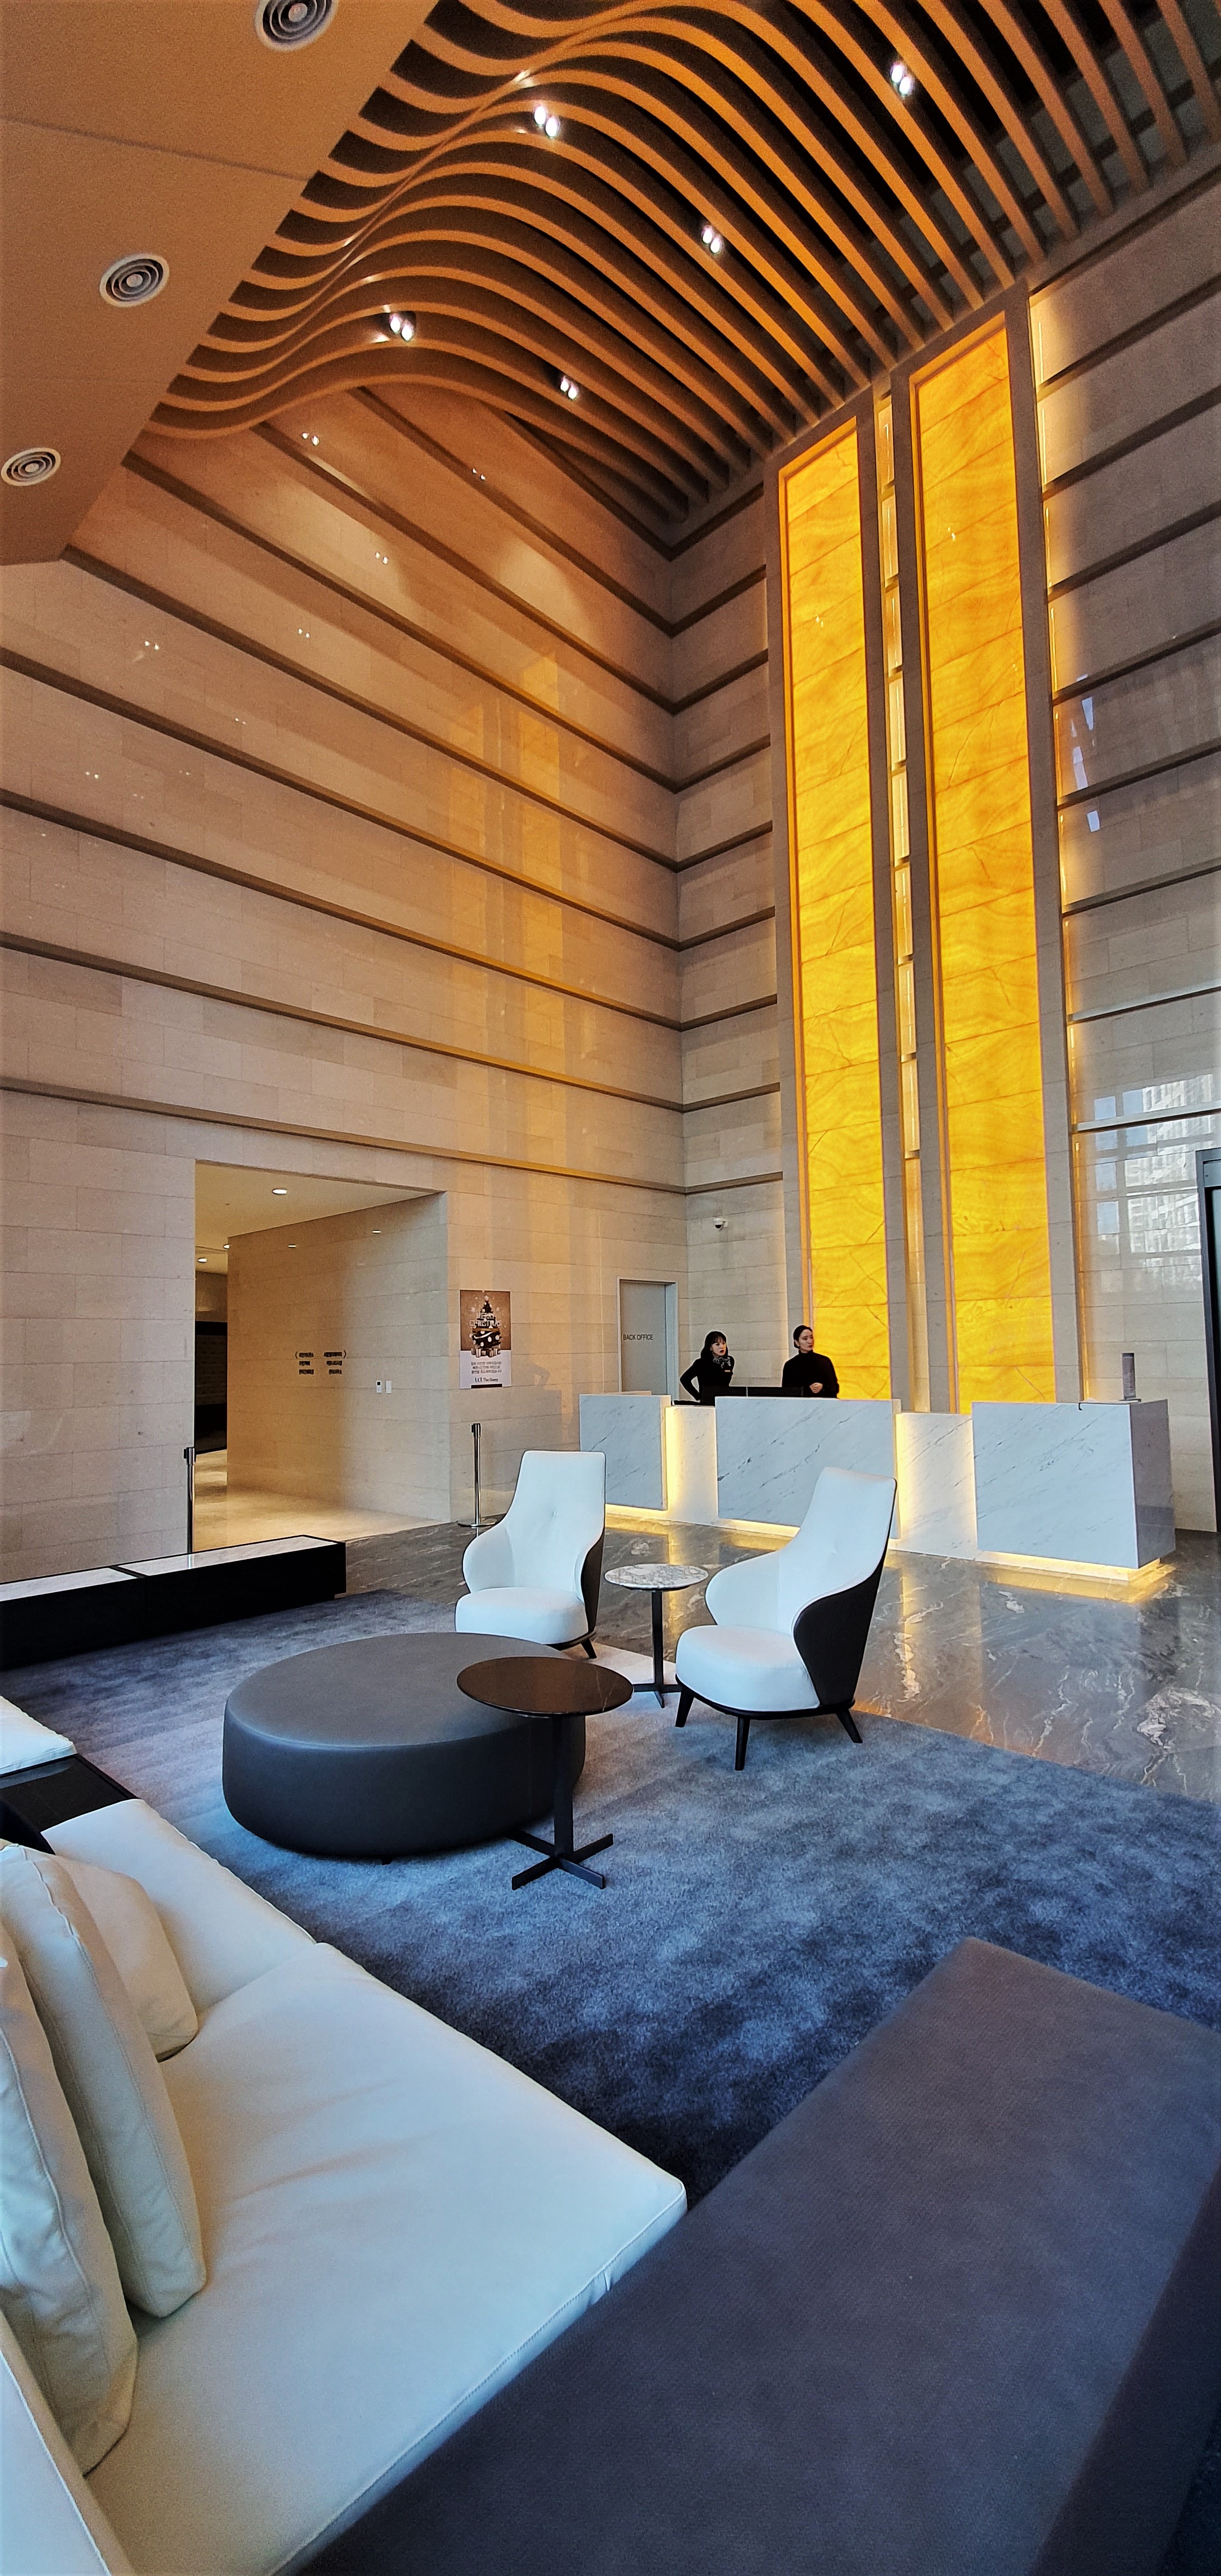 특급호텔을 연상시키는 엘시티 더샵 로비라운지. 2층 이상 높이의 천장으로 개방감을 자랑한다